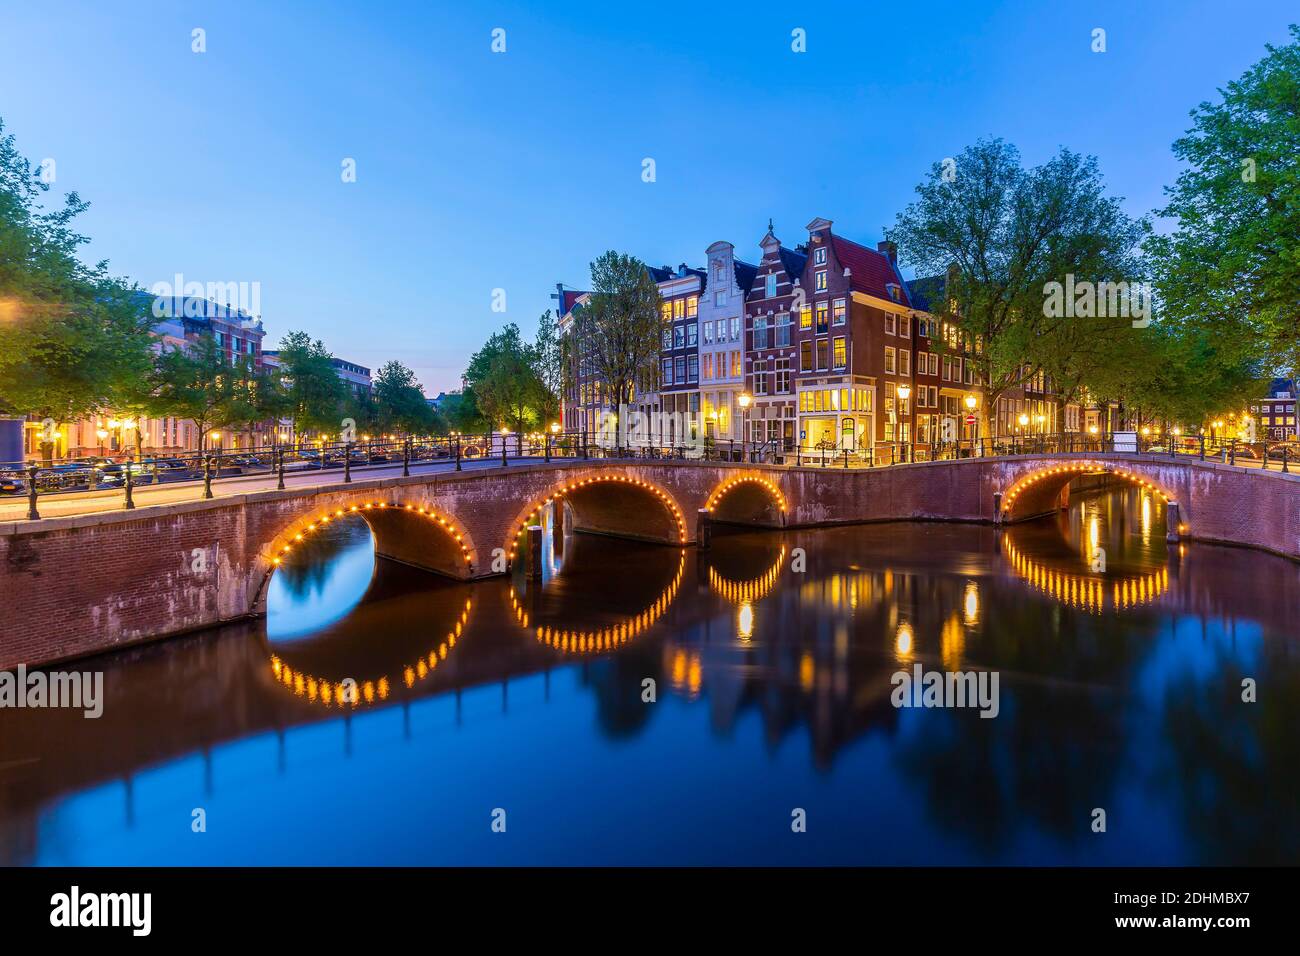 Calles y canales de Ámsterdam durante el anochecer. Puentes iluminados, temporada de verano. Destino turístico popular para los turistas. Foto de stock